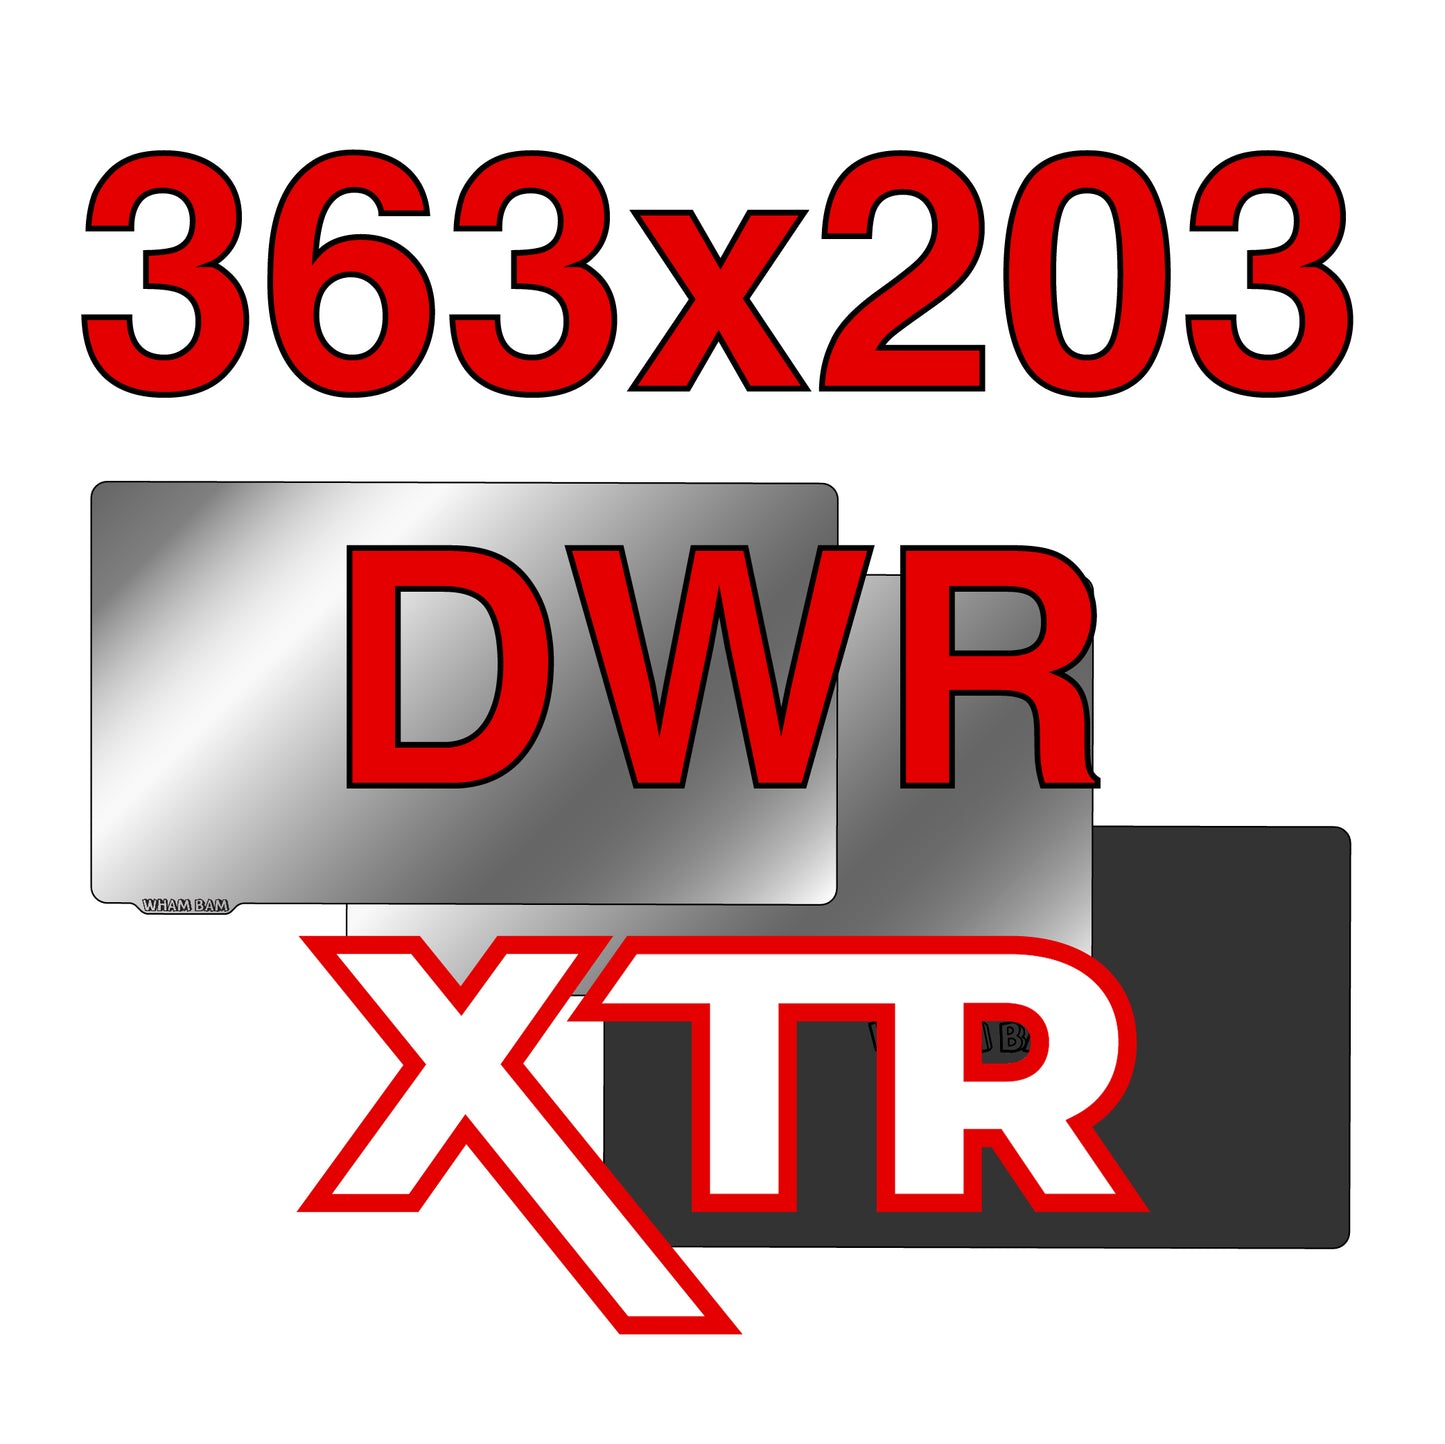 363 x 203 - XTR - Apex-Maker X1